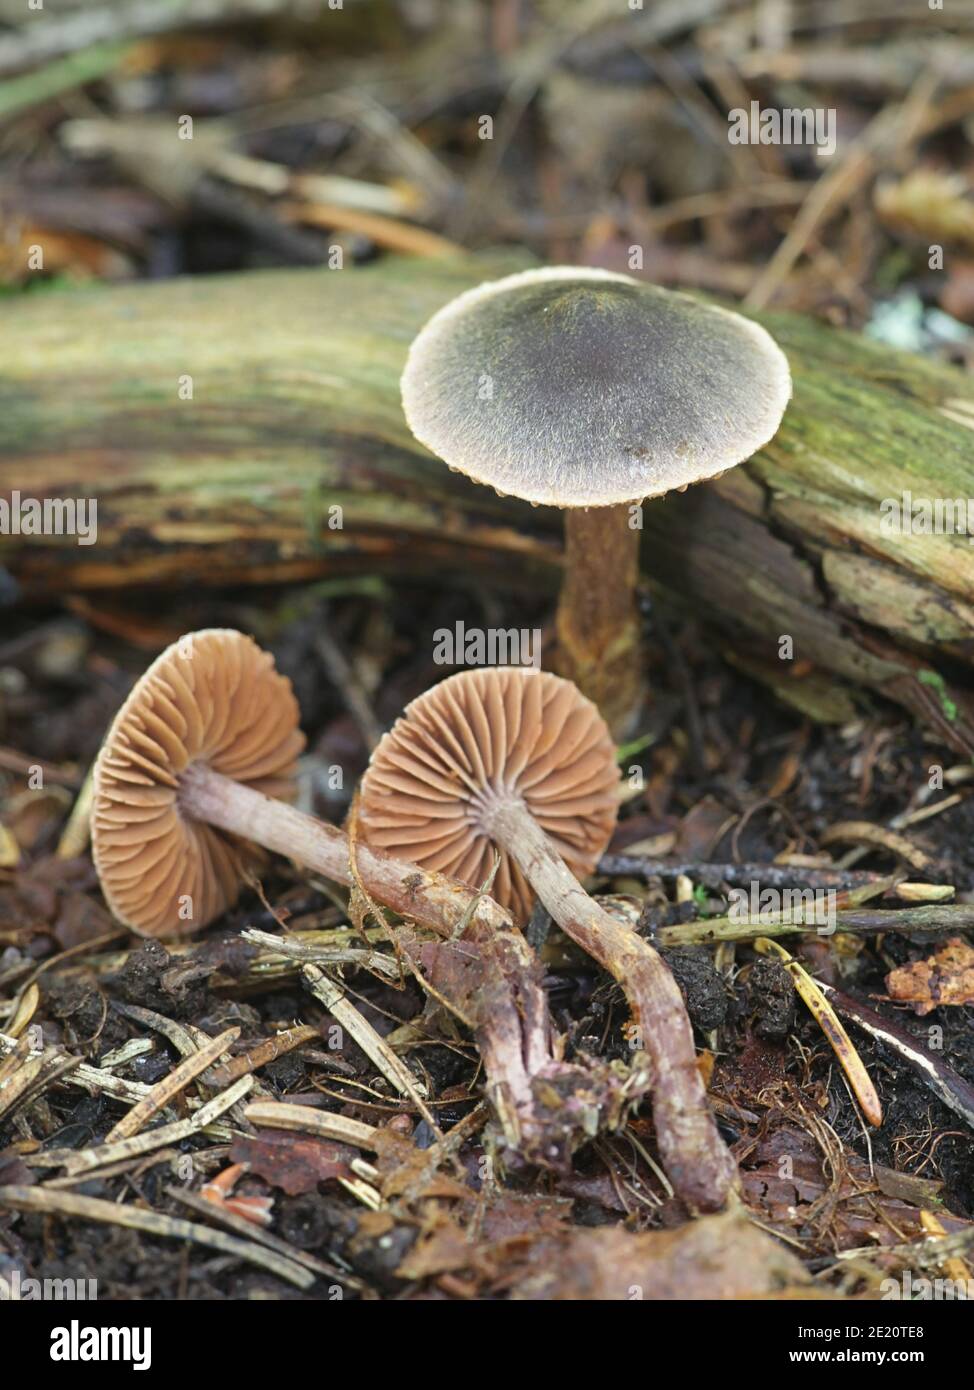 Cortinarius anthracinus, wild webcap mushrooms from Finland Stock Photo